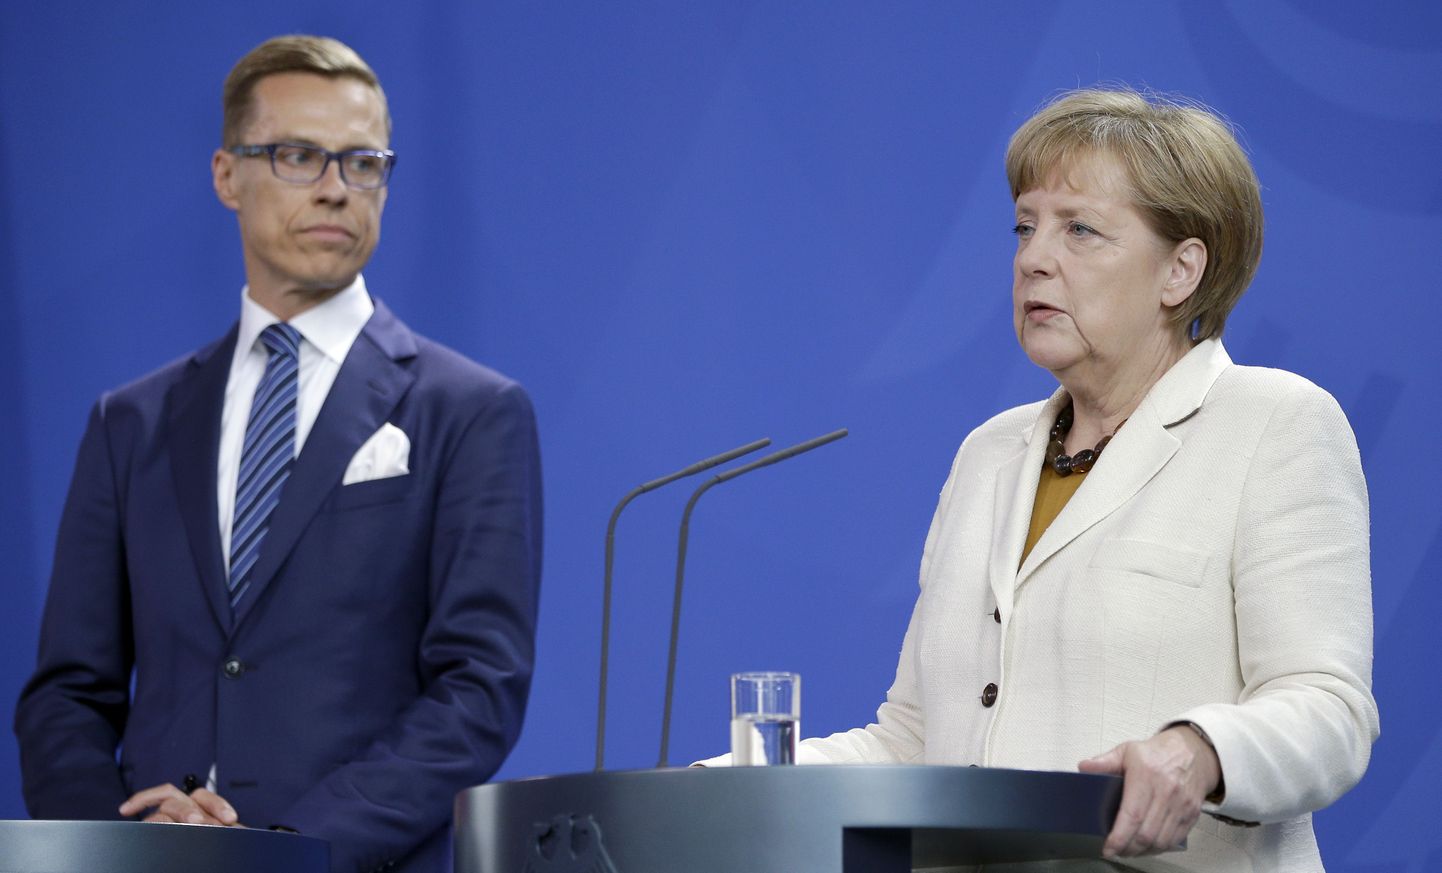 Soome peaminister Alexander Stubb ja Saksa kantsler Angela Merkel tänasel pressikonverentsil.